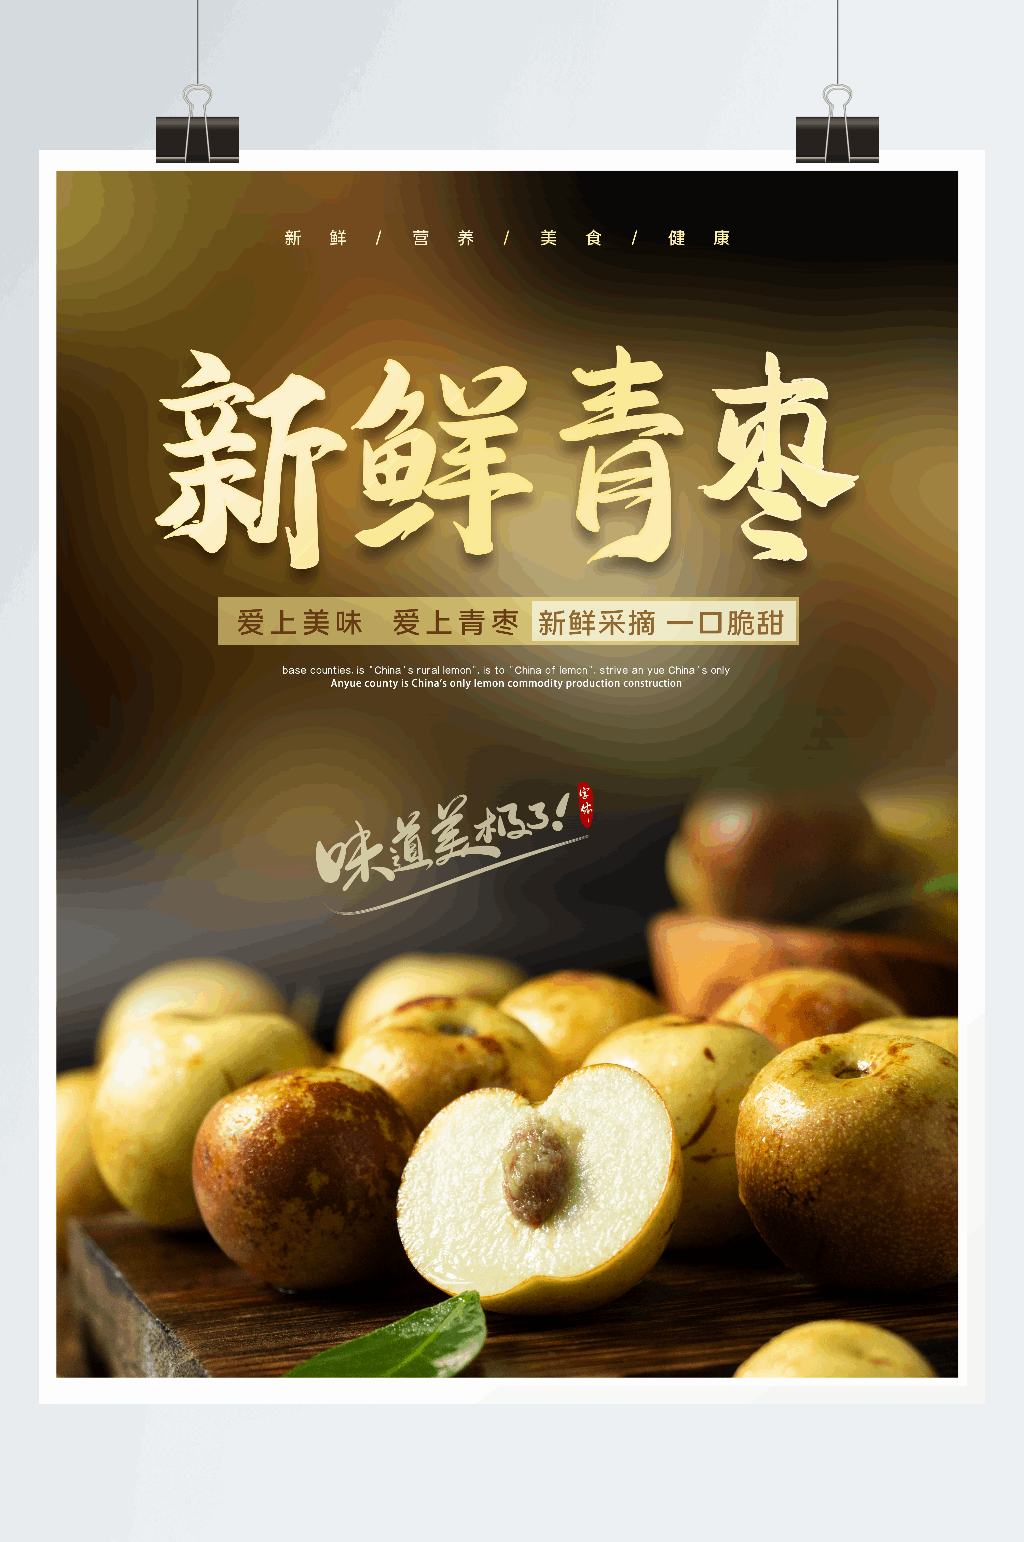 沾化冬枣广告语图片